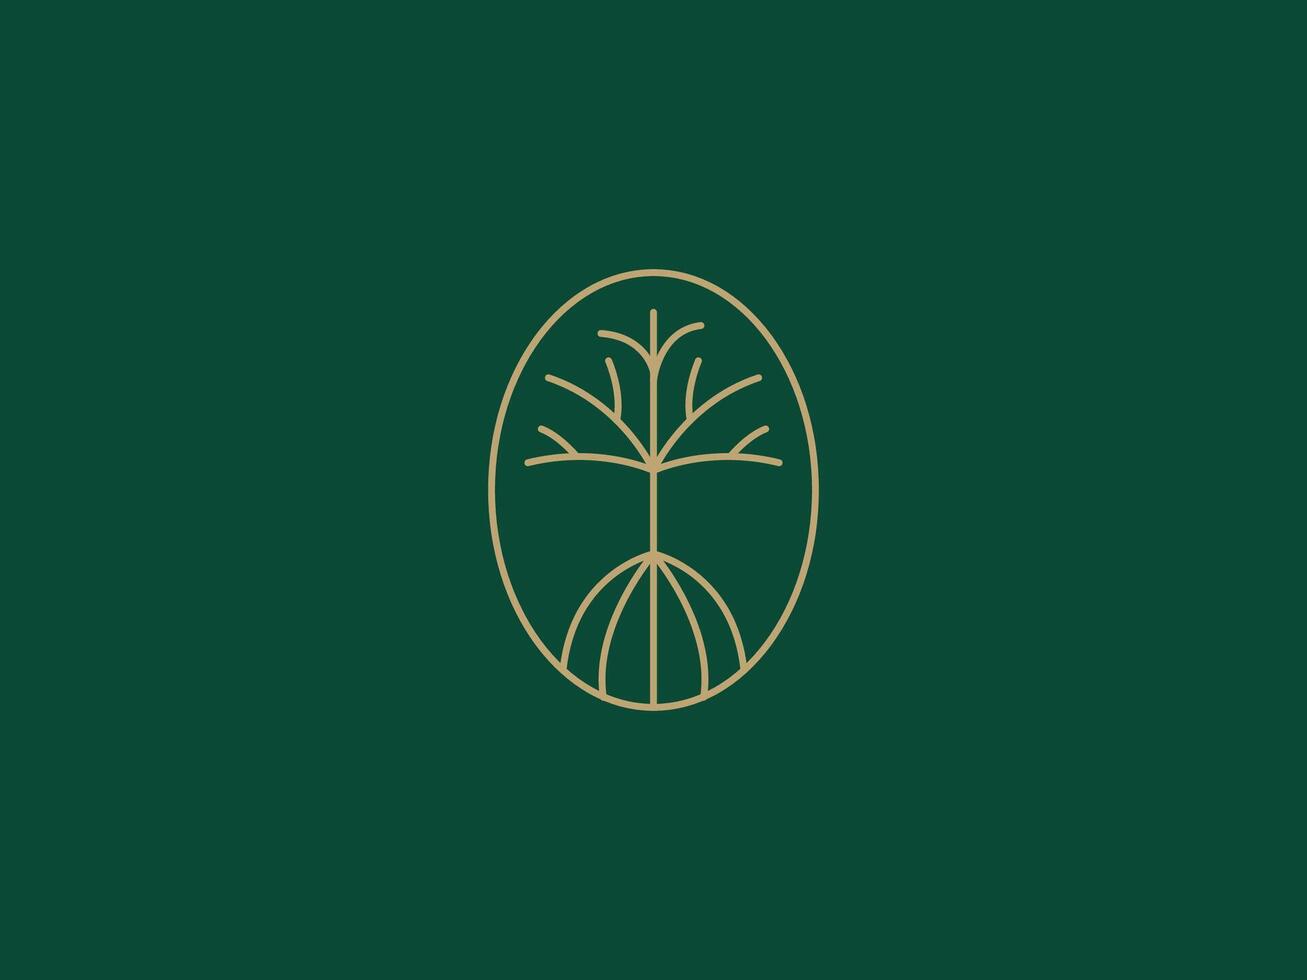 logo modèle pour affaires et entreprise avec chêne arbre vecteur